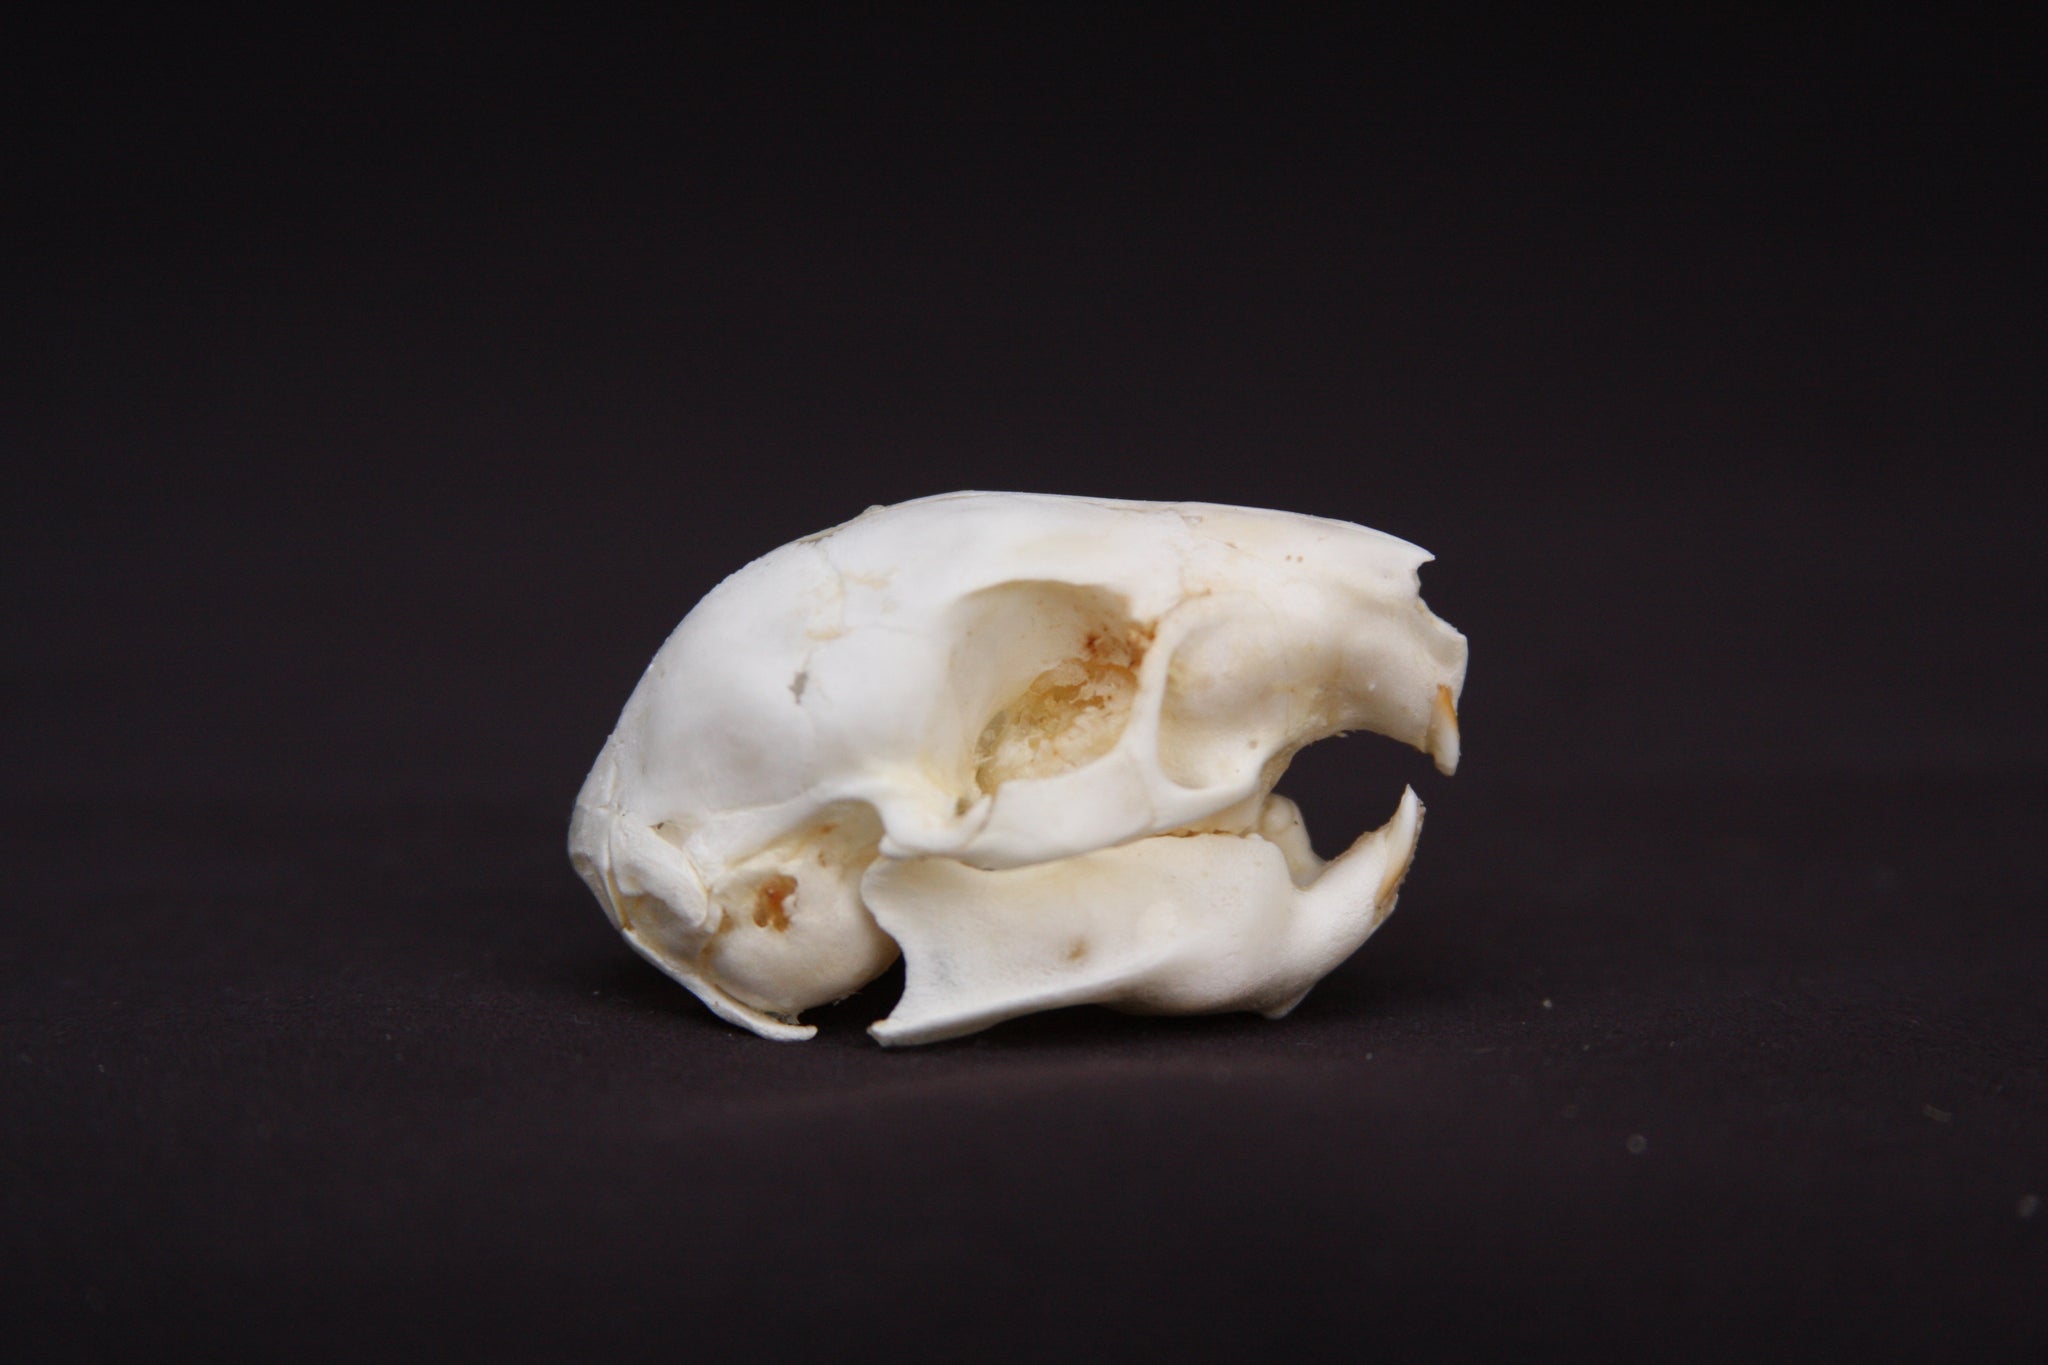 Fetal Nutria Skull